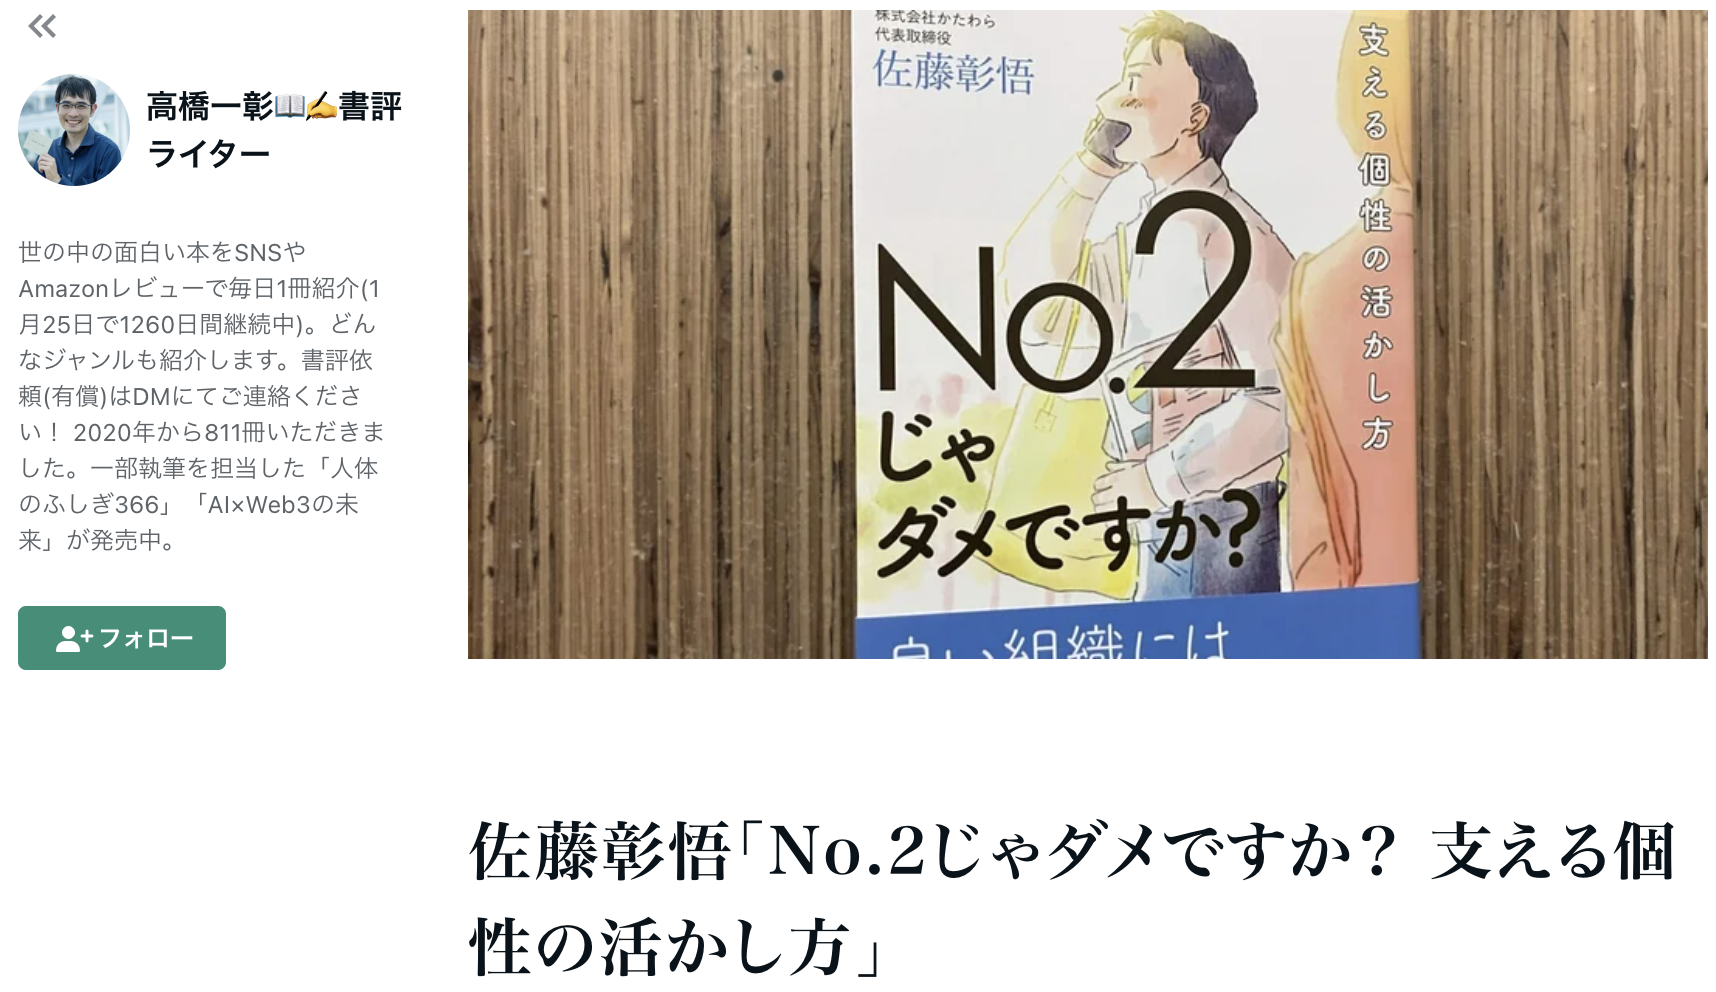 佐藤彰悟 著『No.2じゃダメですか？支える個性の活かし方』の書評が掲載されました